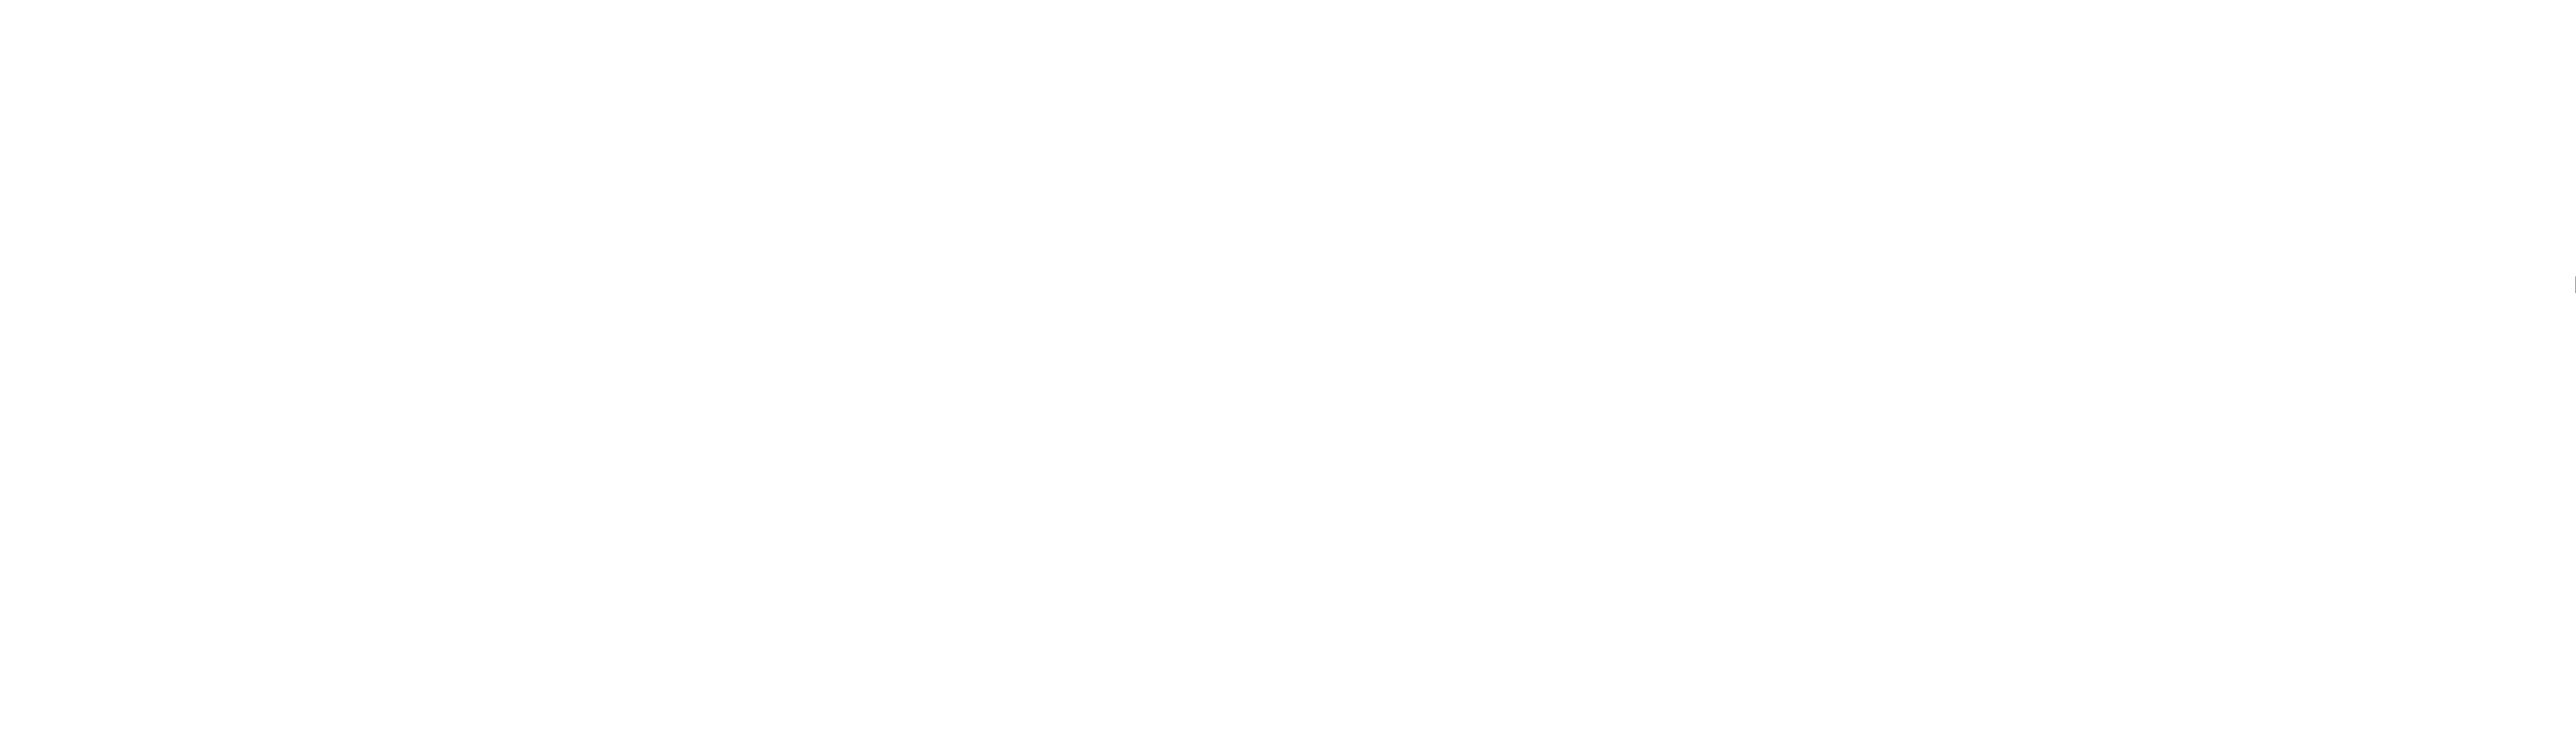 Breitenstein Art & Photography logo.